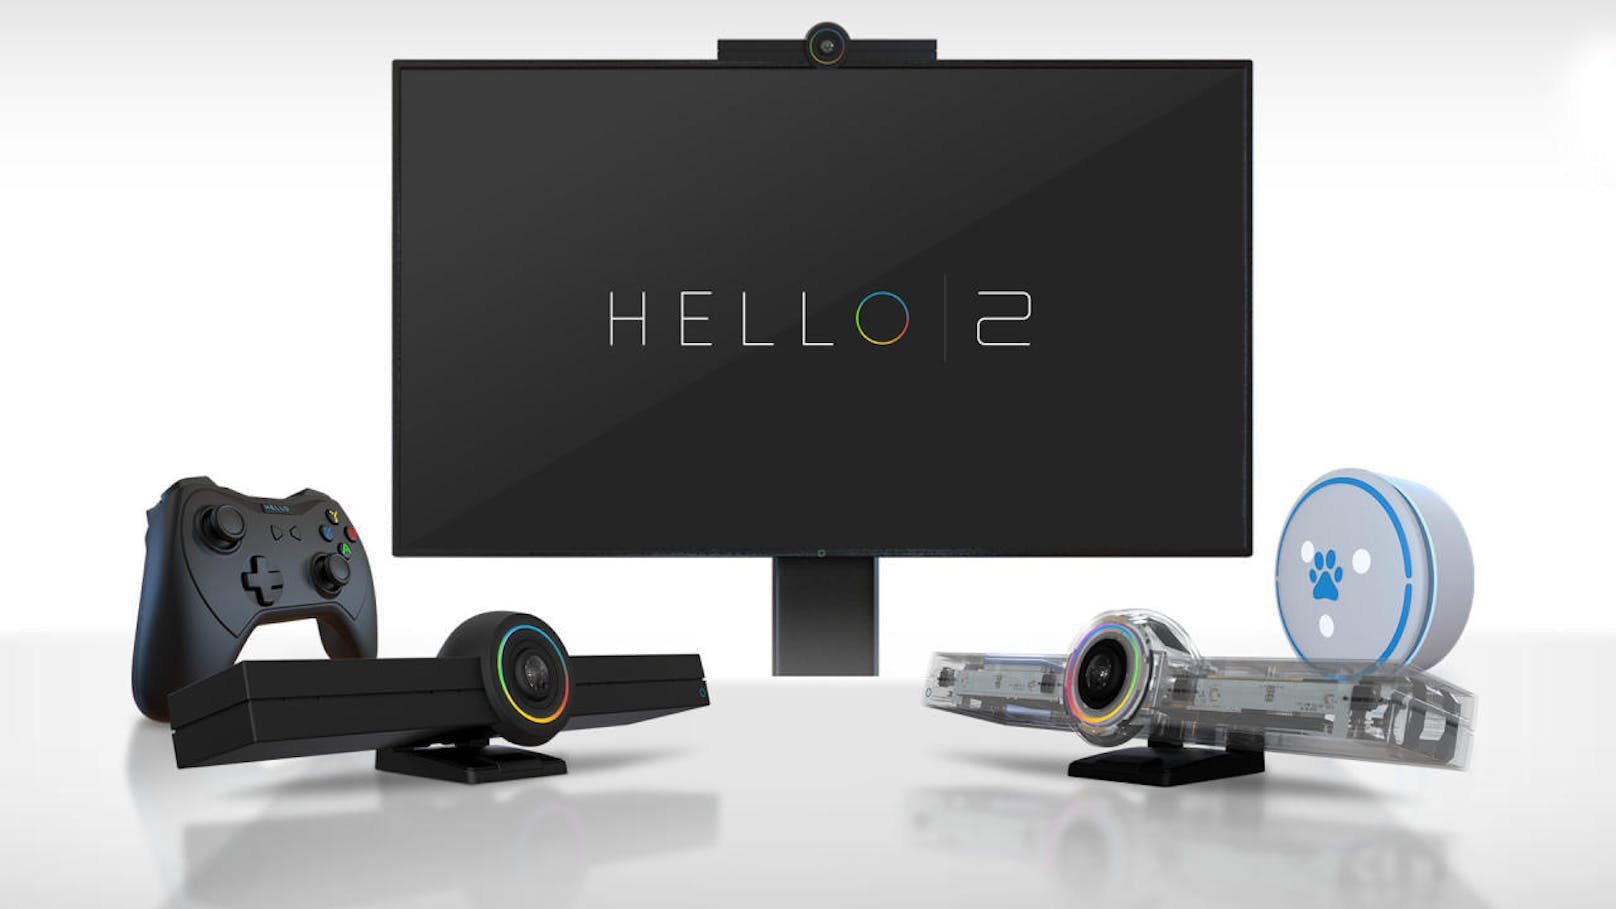 Vor zwei Jahren wurde "Hello" vorgestellt, ein Tool, das aus jedem TV ein Kommunikationsgerät macht. Am 9. Oktober startet eine neue Kickstarter-Kampagne, bei der "HELLO 2", "HELLO Creator Edition", "HELLO Touch TV" und "HELLO Controller" vorgestellt werden. "Hello 2"-Geräte sind Ende-zu-Ende verschlüsselt und machen aus Fernsehern Multimedia-Geräte. Möglich sind Videokonferenzen, kabelloses Screen-Casting und -Sharing, digitales Whiteboard, Sprachsteuerung, Live-Übertragungen und Smart Homes.